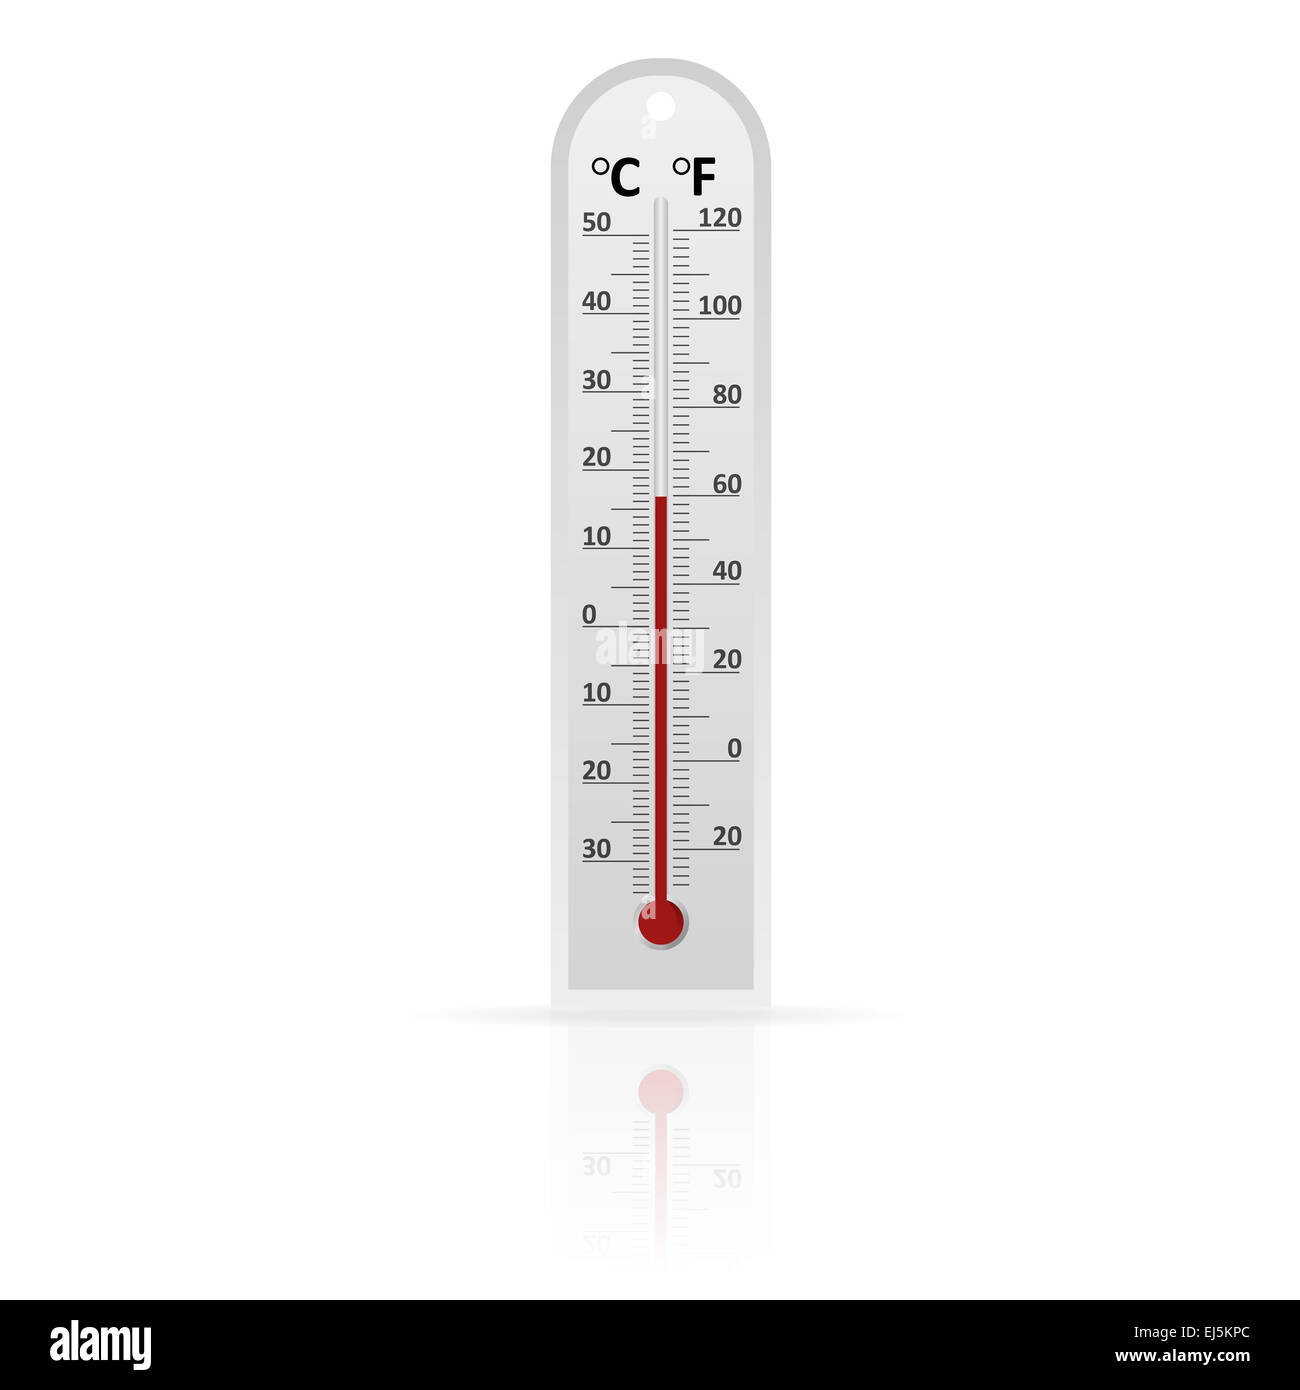 Image Vecteur de météo thermomètre en verre véritable Photo Stock - Alamy